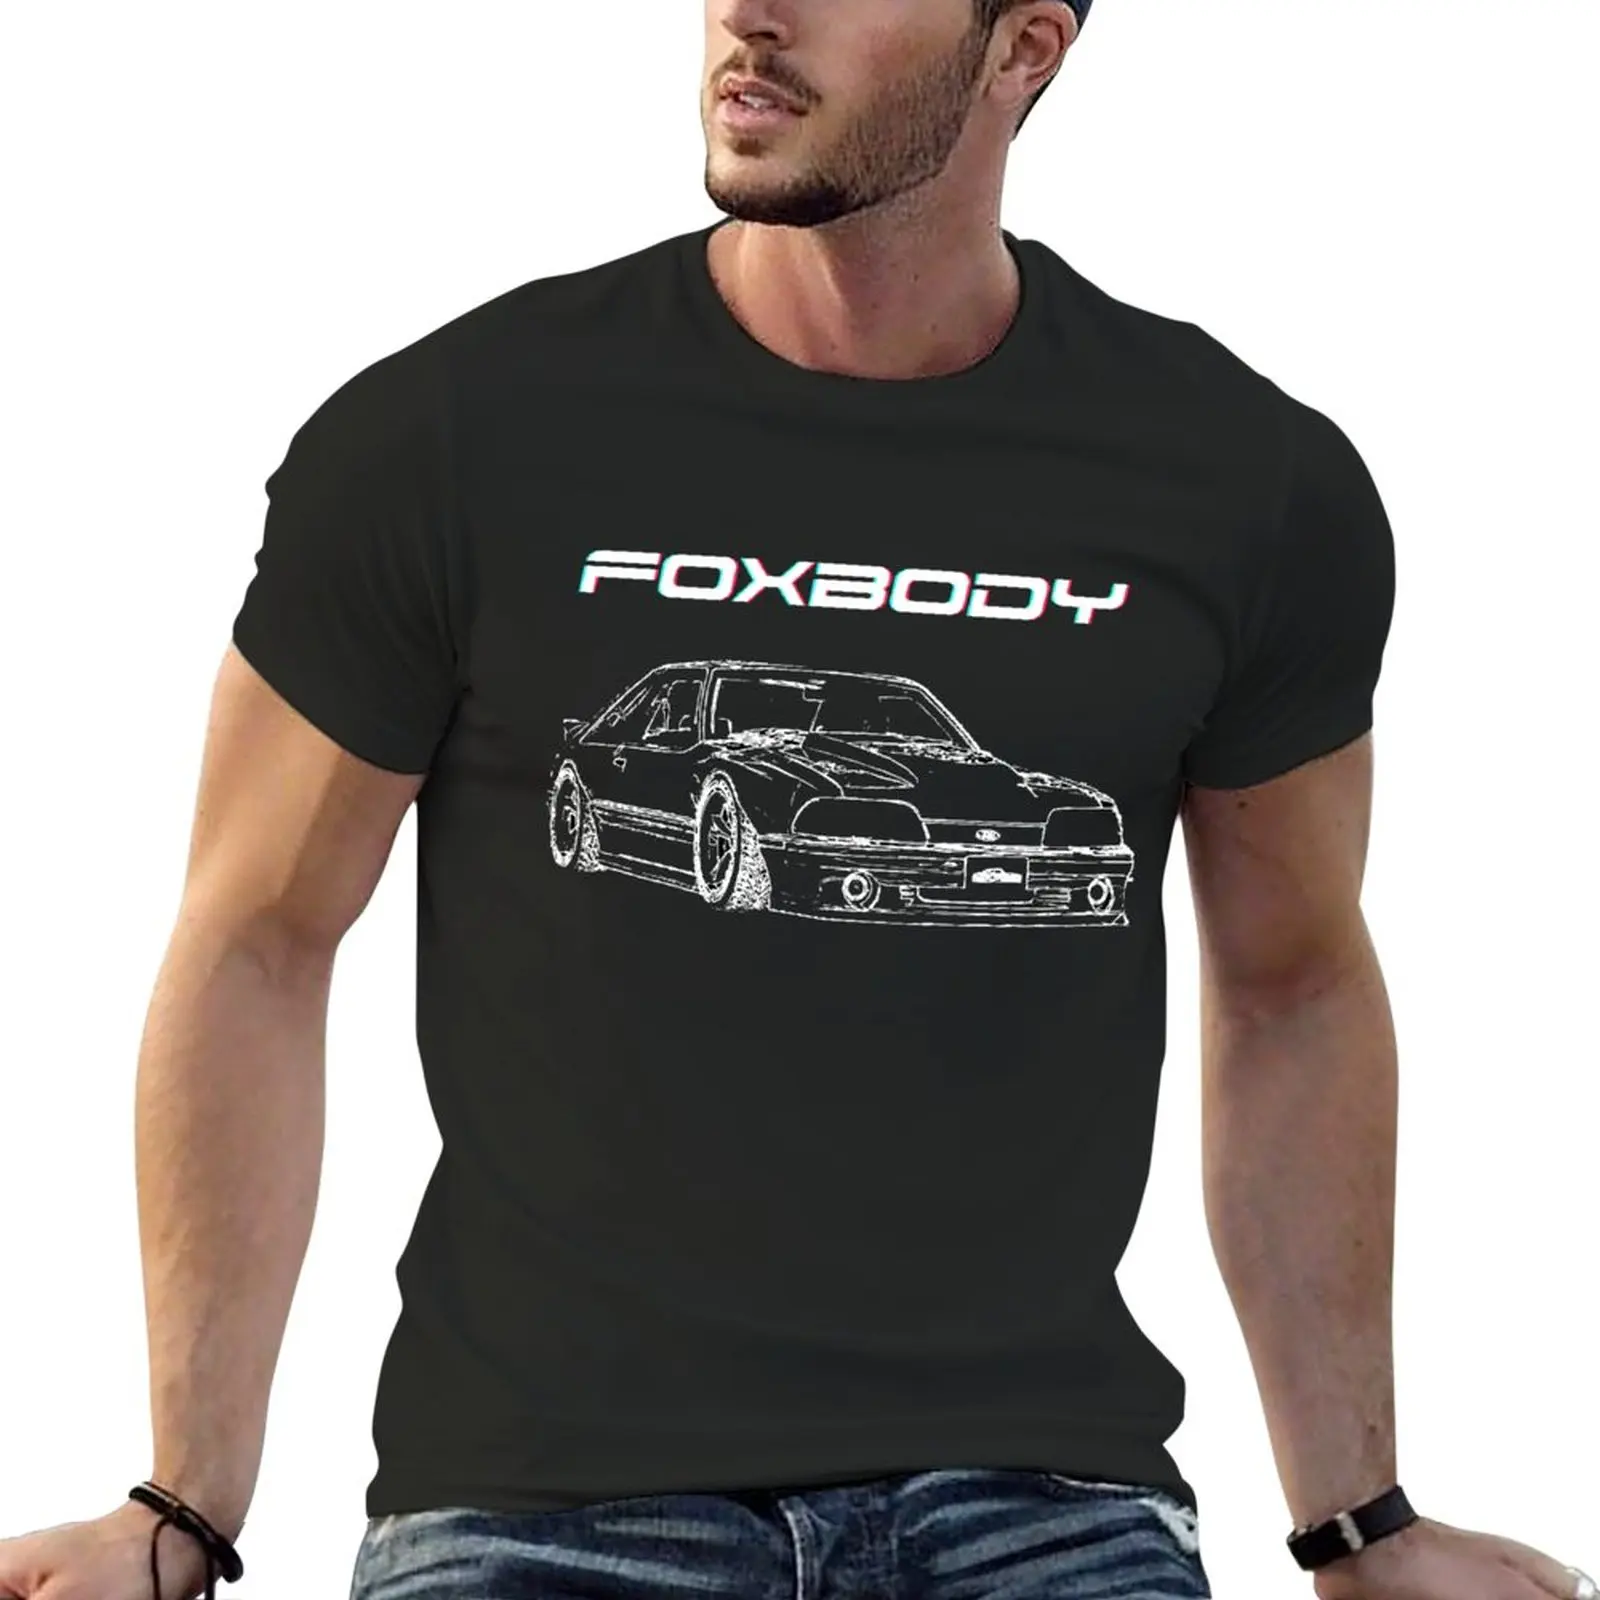 Terc Útbaigazítás Musztáng foxbody Foxi Alapanyag Szokás Osztóvonal Művészet Póló kawaii ruhák Nehézsúlyú T shirts számára férfiak